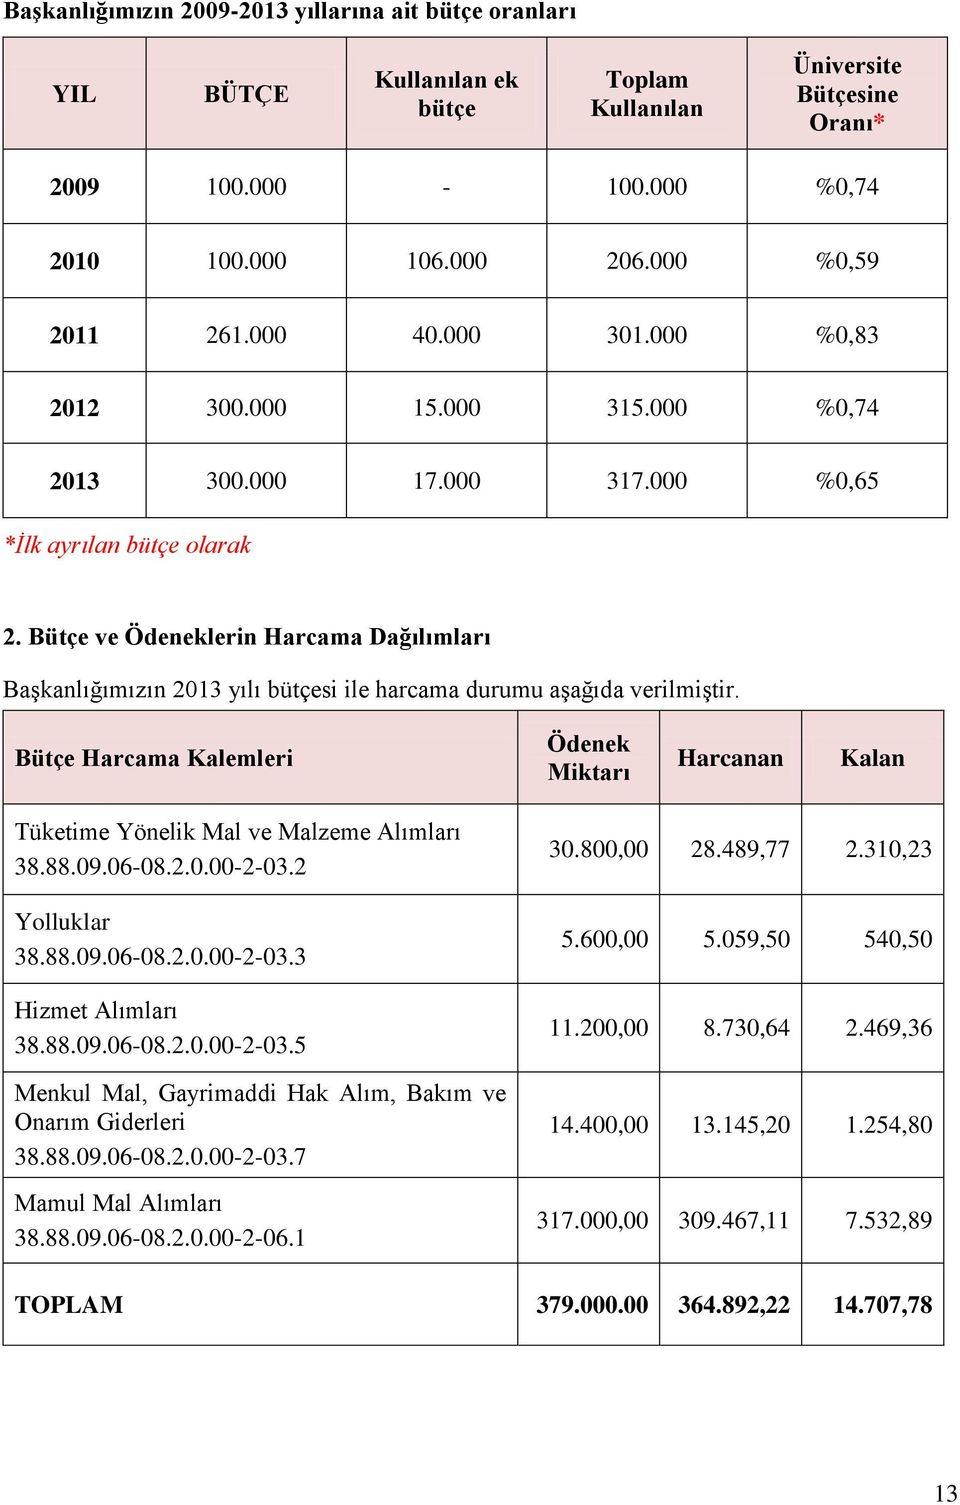 Bütçe ve Ödeneklerin Harcama Dağılımları Başkanlığımızın 2013 yılı bütçesi ile harcama durumu aşağıda verilmiştir.